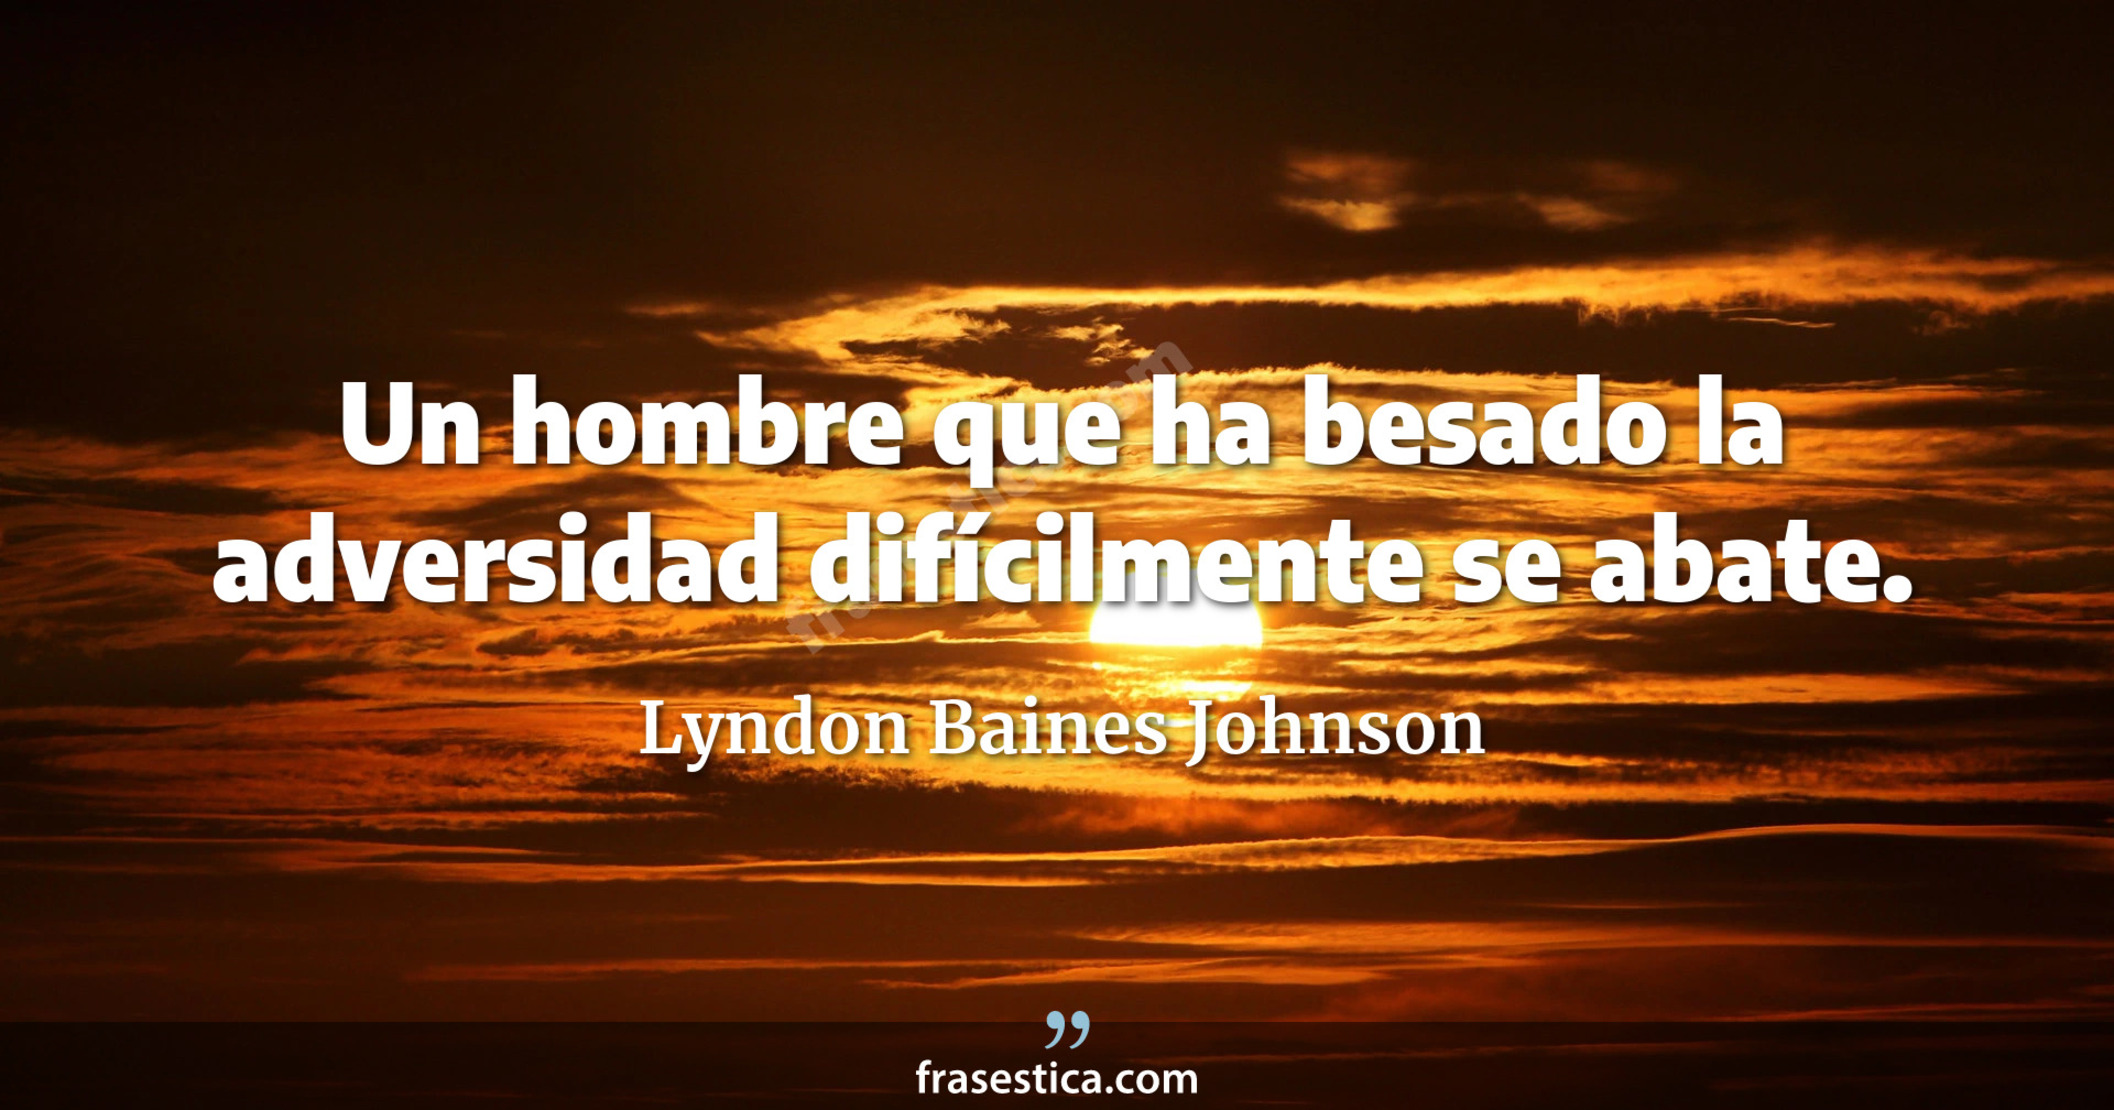 Un hombre que ha besado la adversidad difícilmente se abate. - Lyndon Baines Johnson